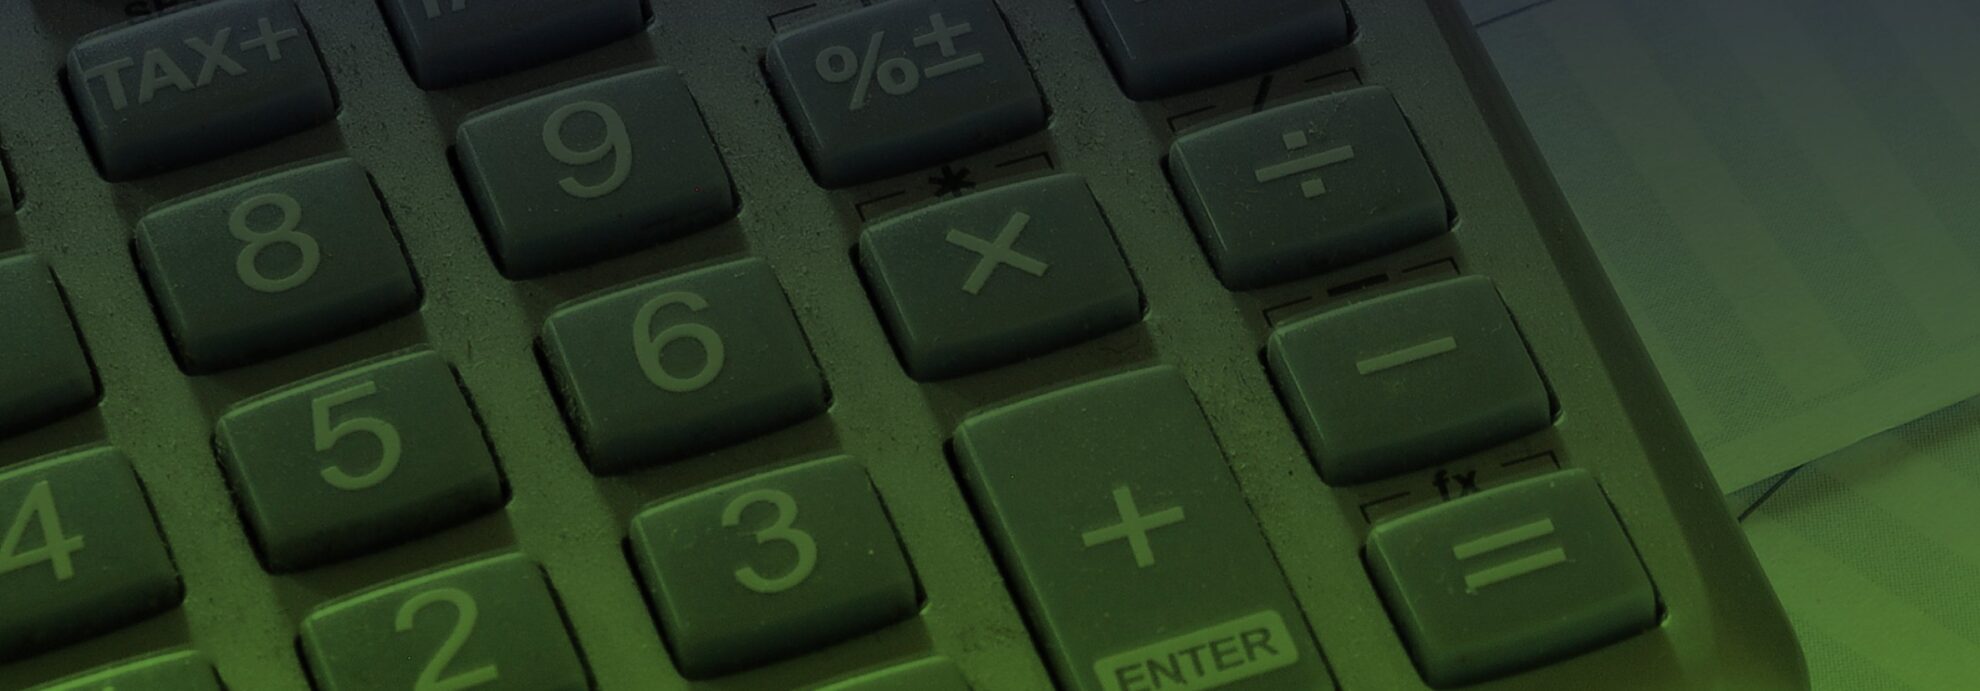 calculator close up in buford ga